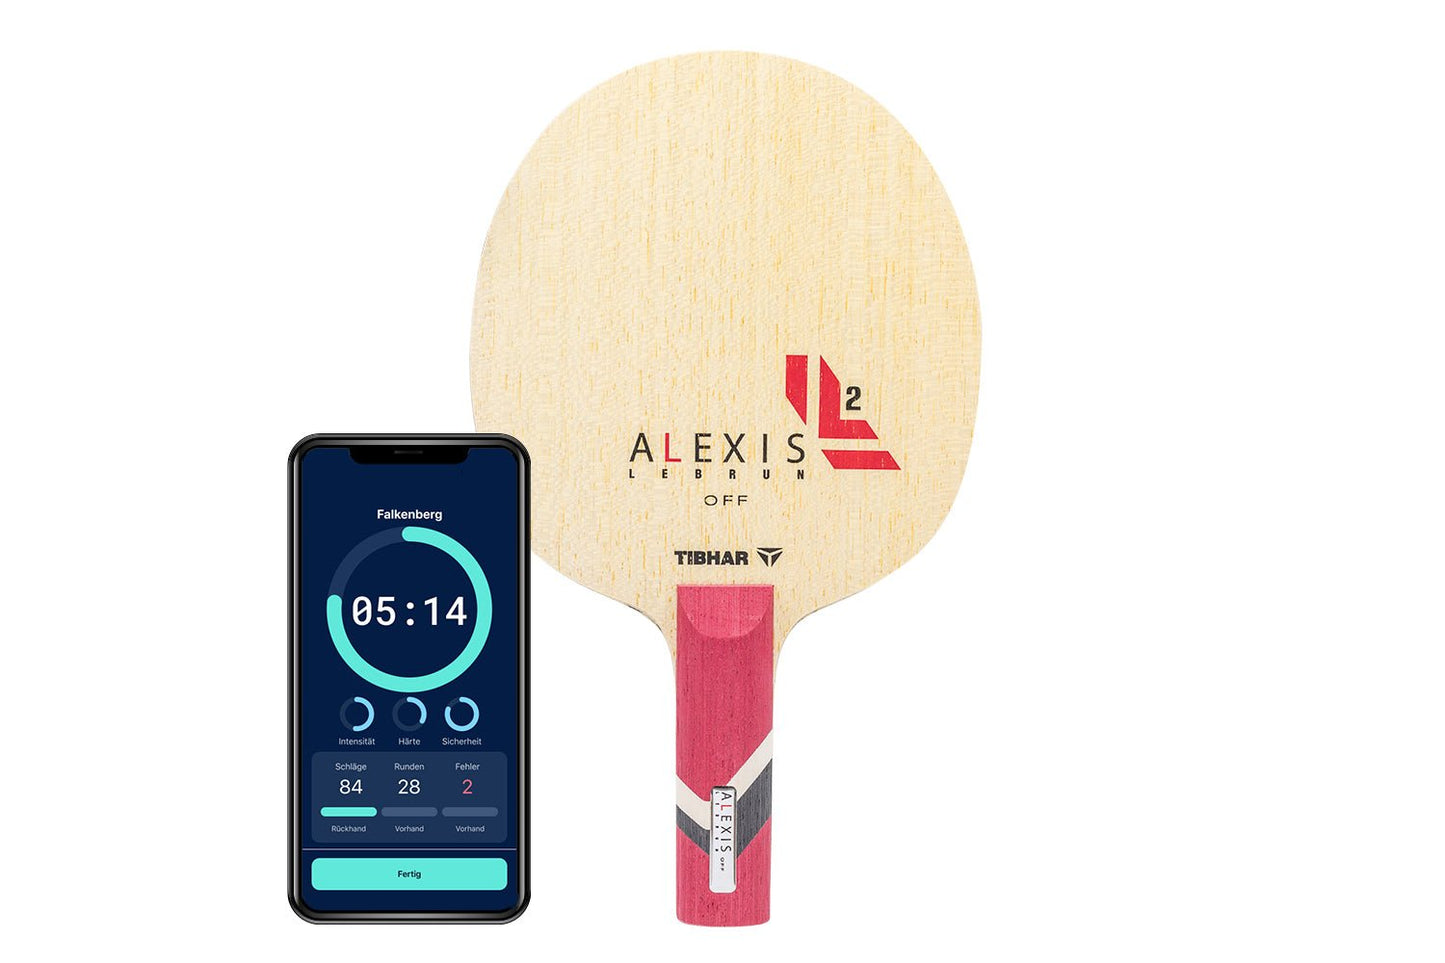 Tibhar Alexis Lebrun Off Tischtennisschläger mit geradem Griff und Smartphone zeigt Daten des Schlägers vor weißem Hintergrund